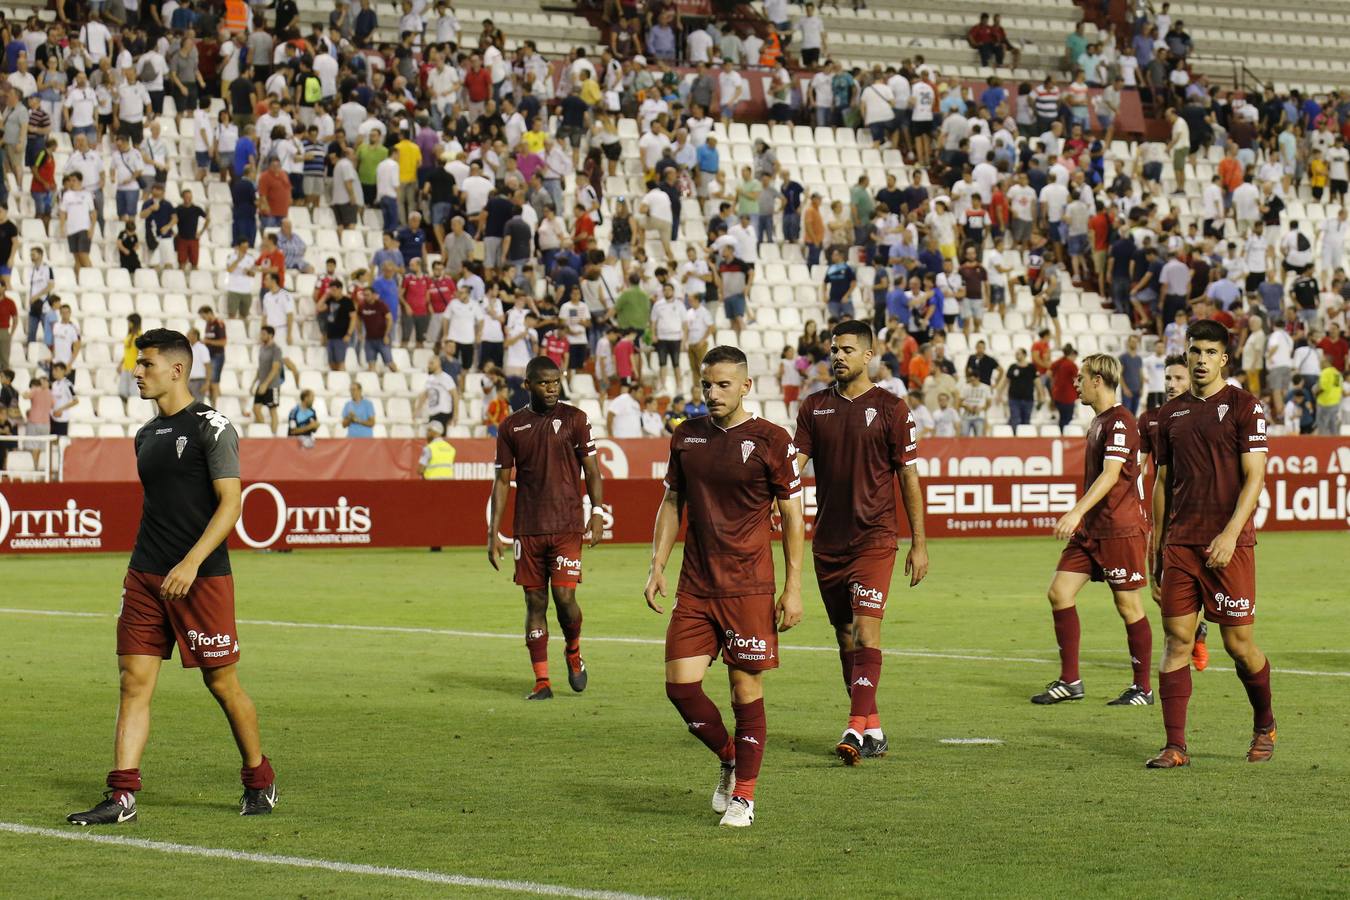 El Albacete-Córdoba CF, en imágenes